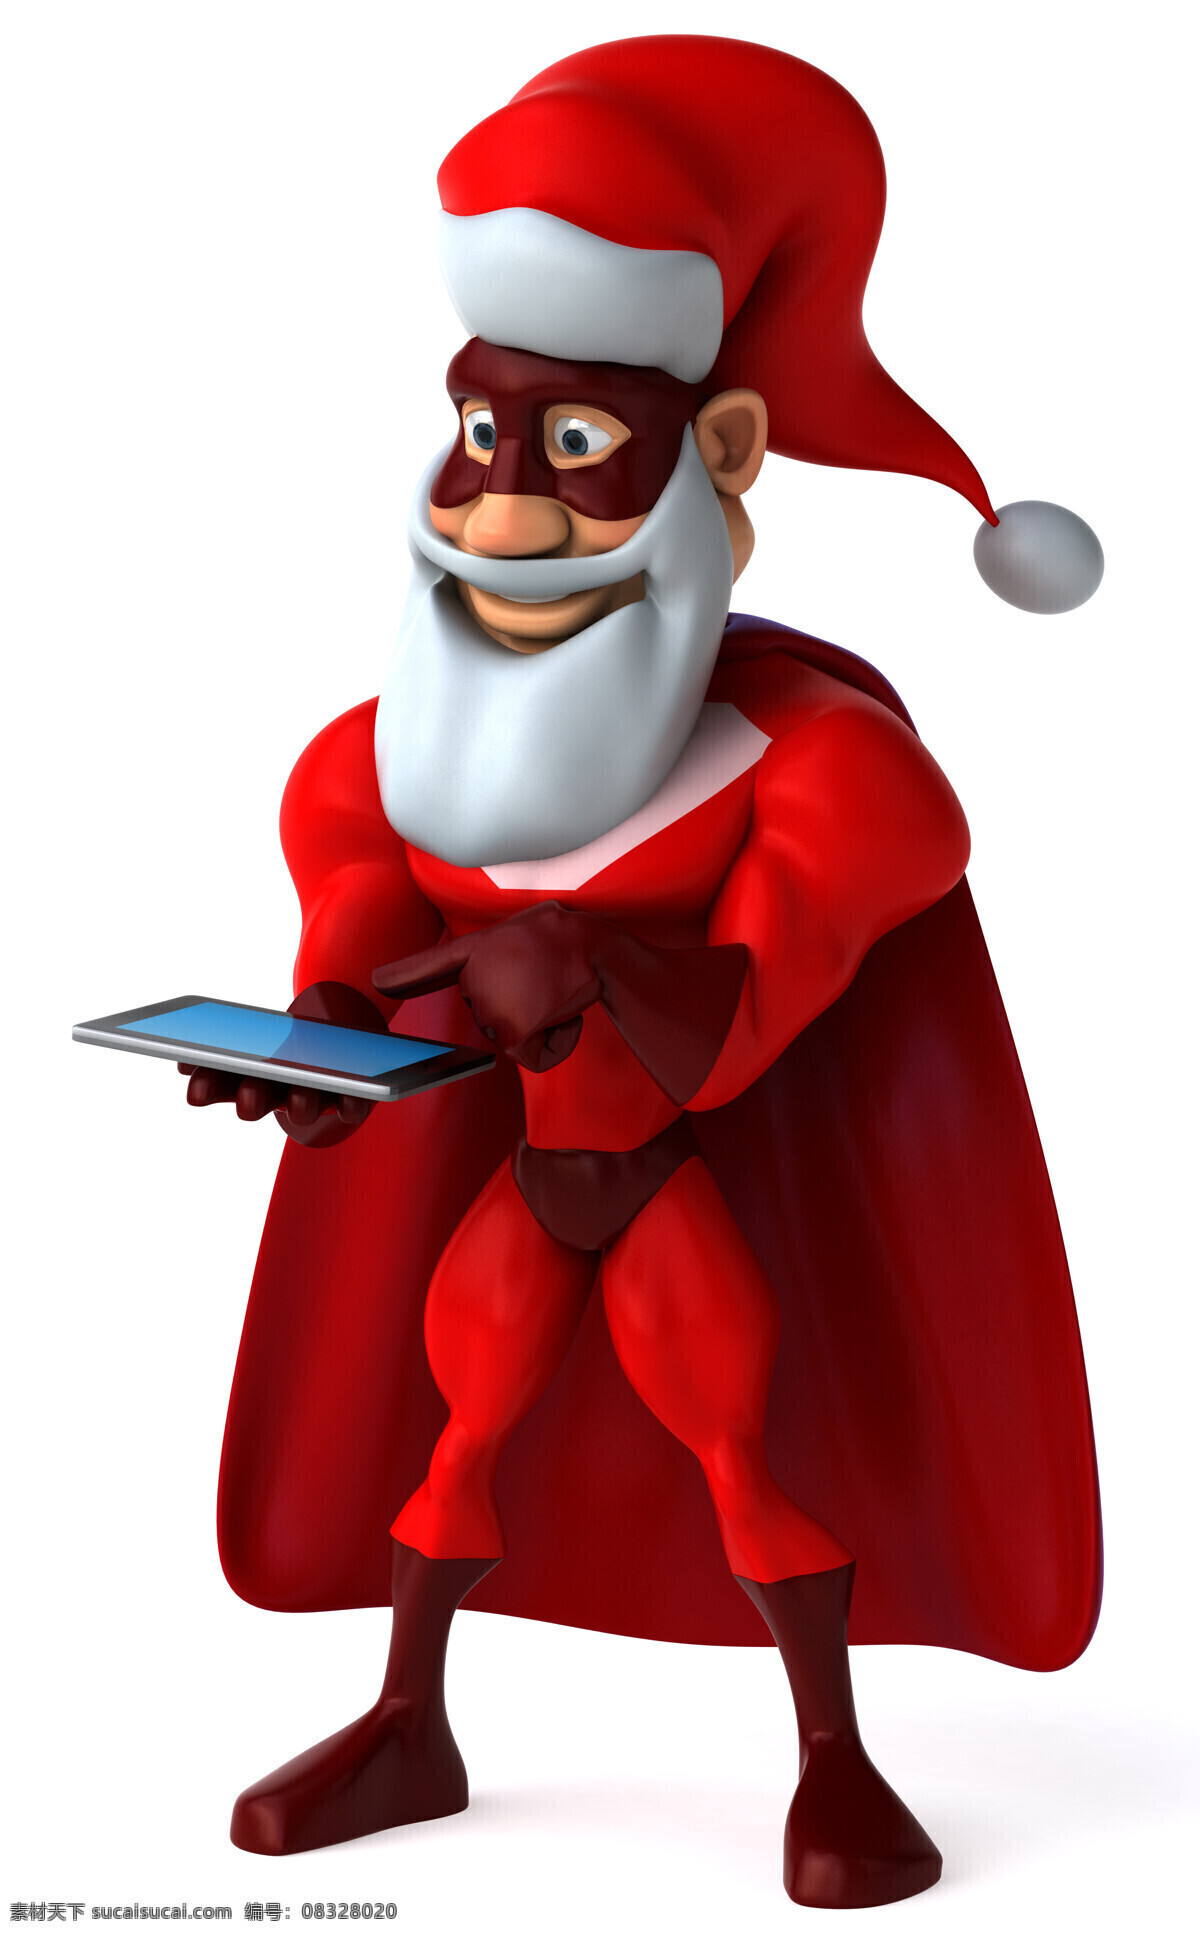 平板电脑 圣诞 超人 圣诞节 卡通人物 红色 其他人物 人物图片